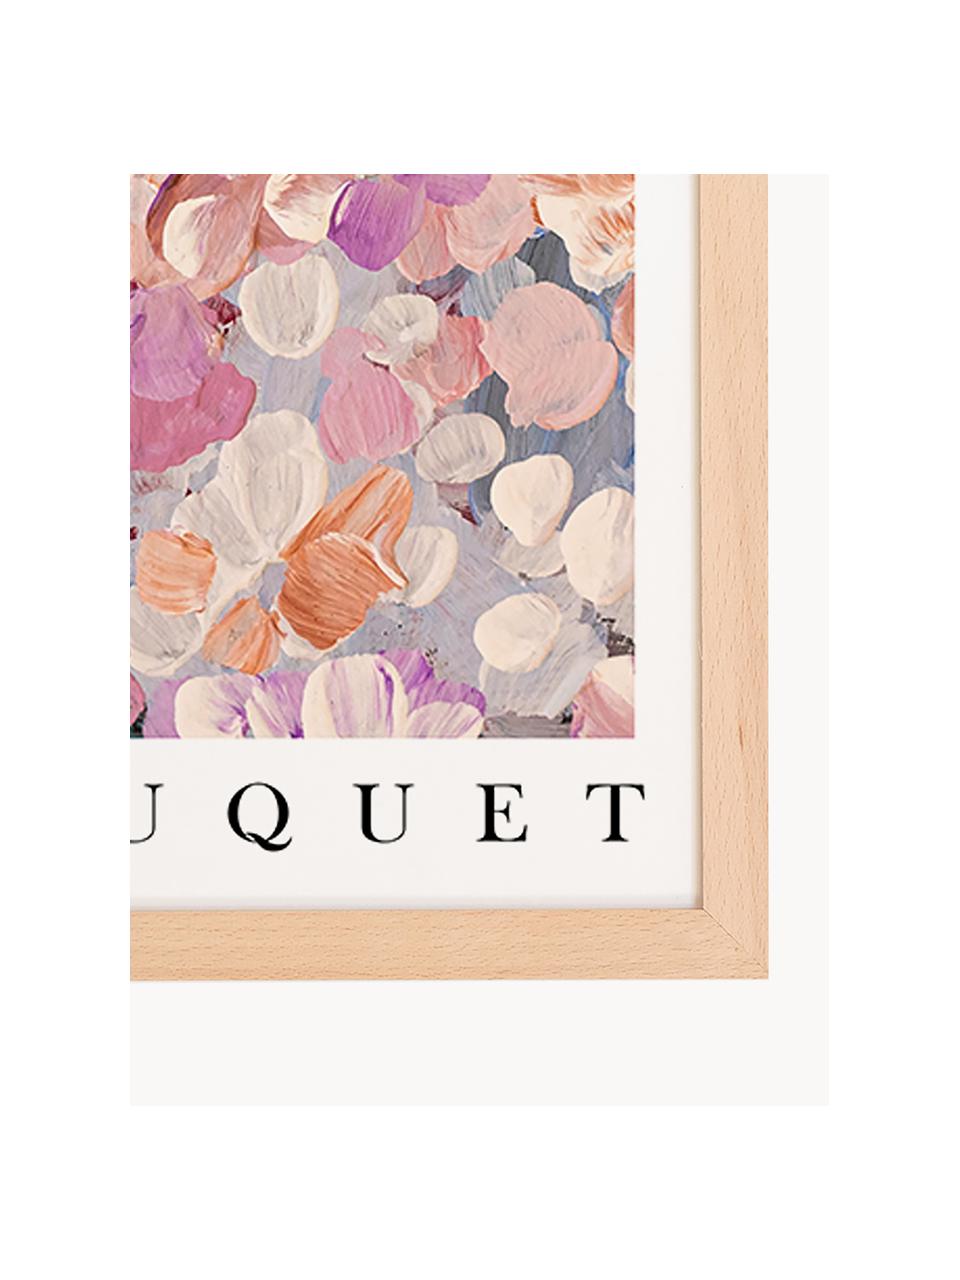 Zarámovaný digitální tisk Le Bouquet, Světlé dřevo, více barev, Š 33 cm, V 43 cm